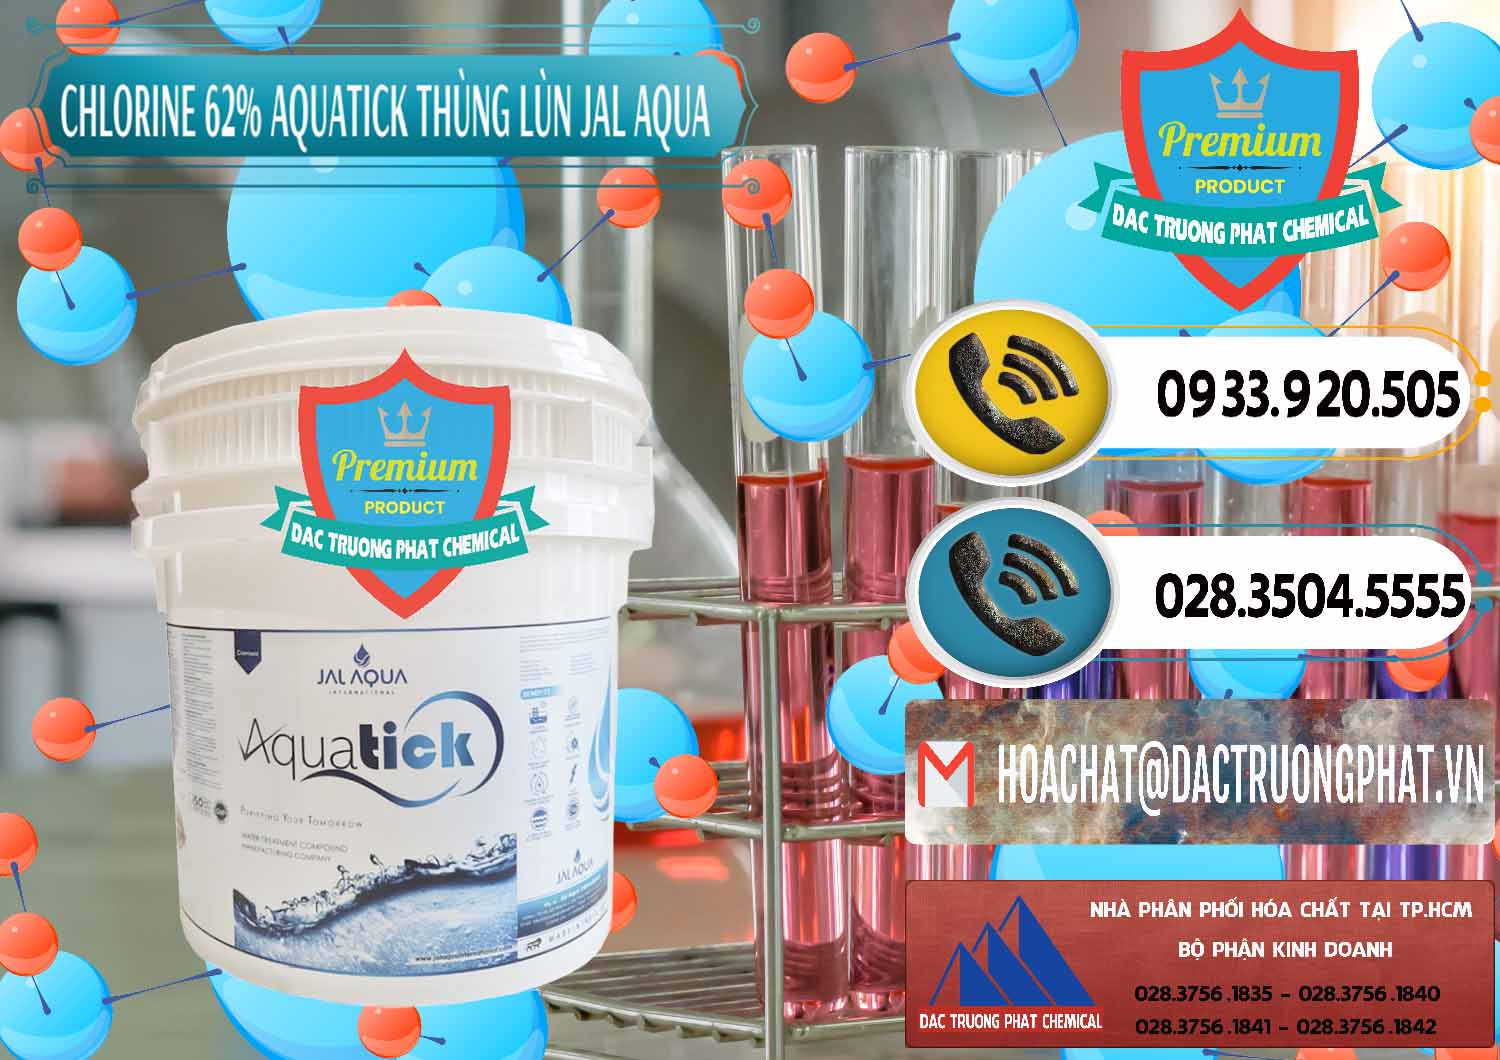 Đơn vị chuyên kinh doanh ( bán ) Chlorine – Clorin 62% Aquatick Thùng Lùn Jal Aqua Ấn Độ India - 0238 - Công ty chuyên nhập khẩu và cung cấp hóa chất tại TP.HCM - hoachatdetnhuom.vn